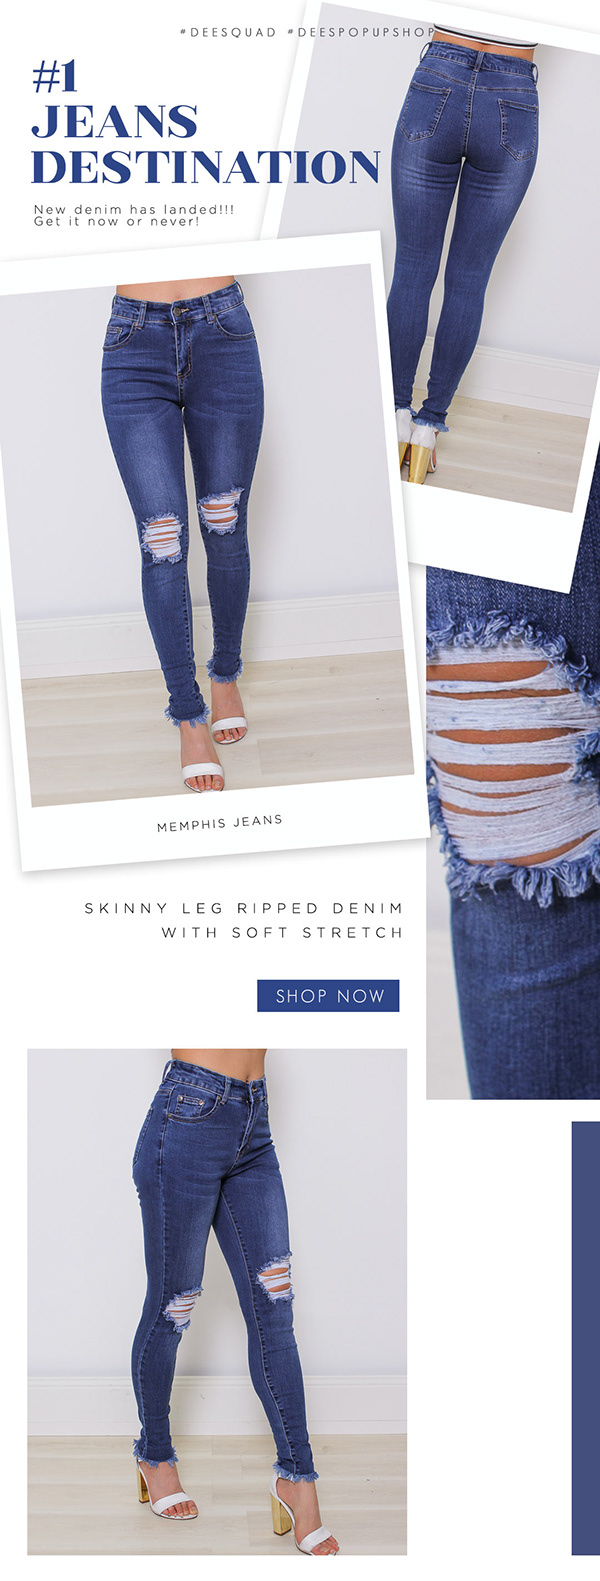 Jeans Newsletter